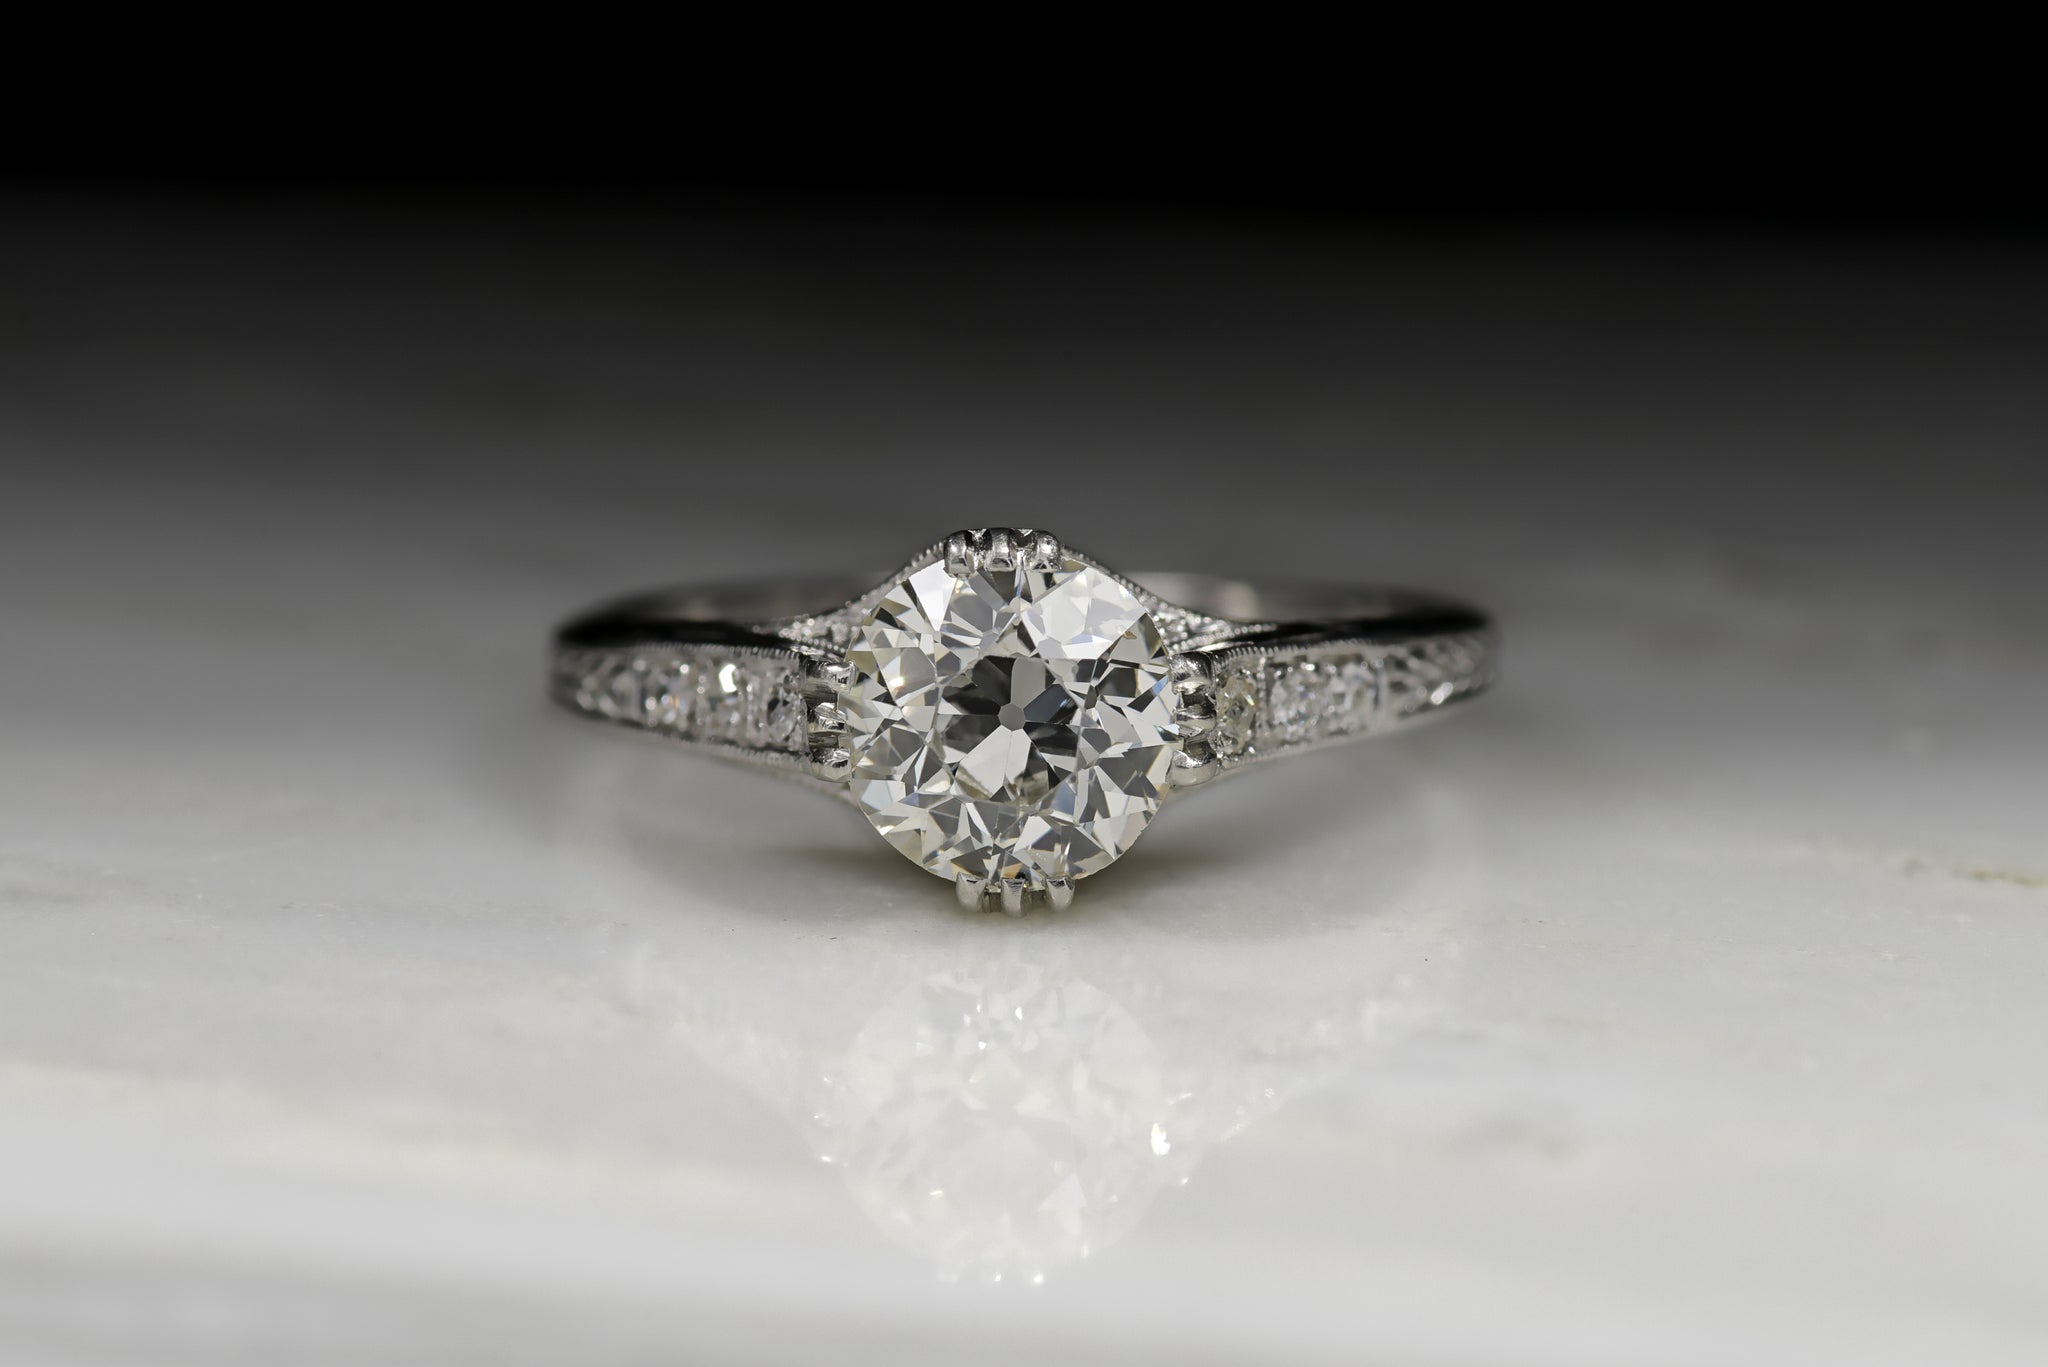 Antique Edwardian 1.54 Carat Old European Cut Diamond Engagement Ring ...